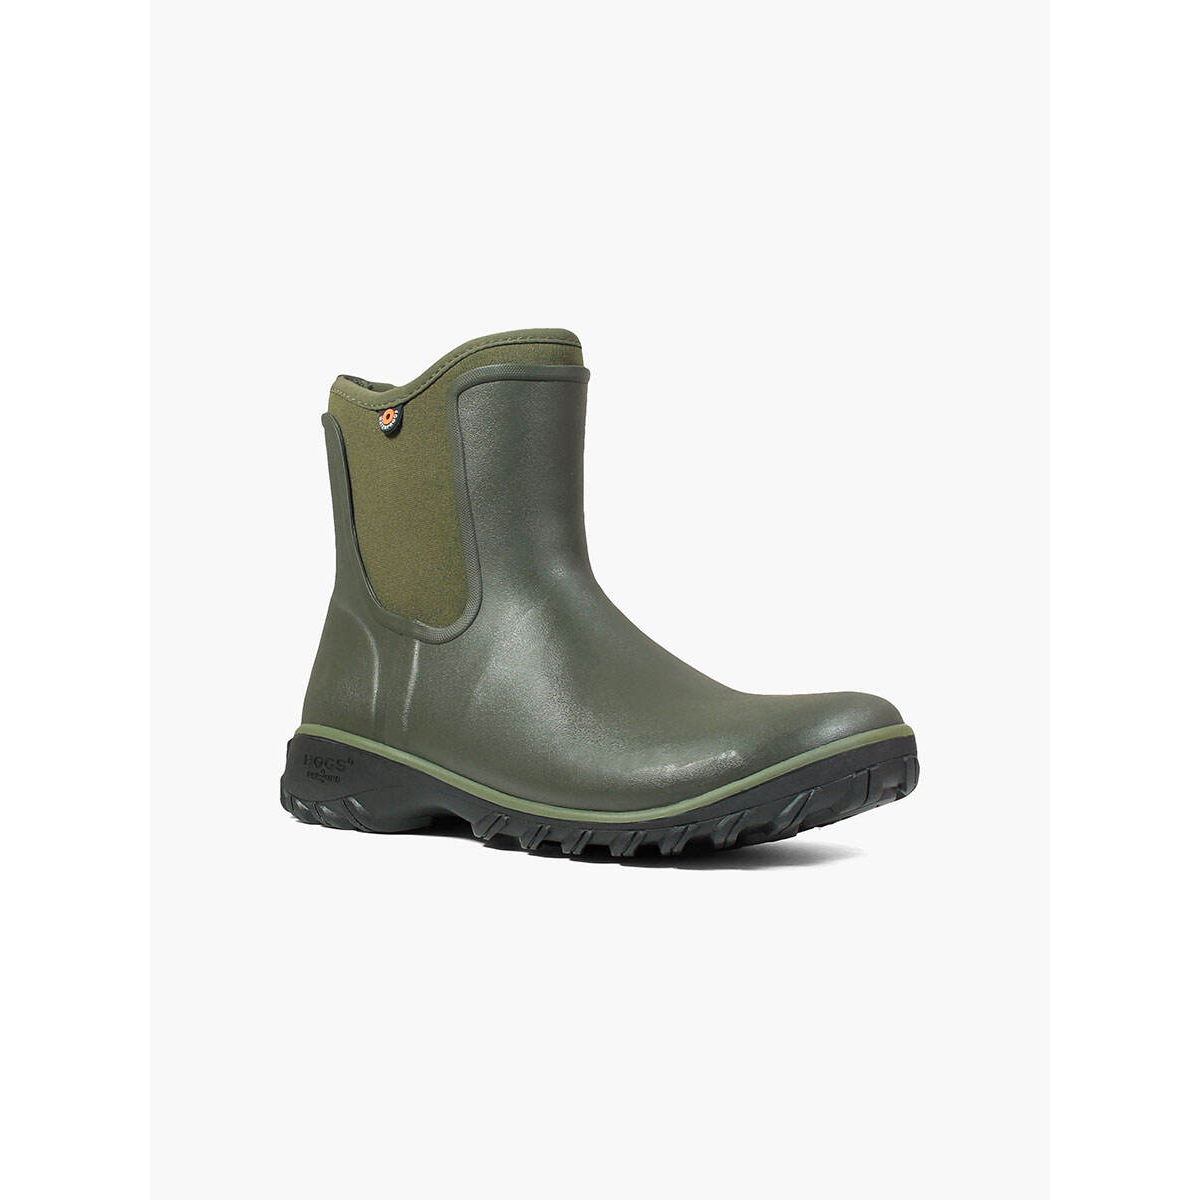 BOGS Women's Sauvie Slip On Waterproof Rain Boots Sage - 72203-306 SAGE - SAGE, 9